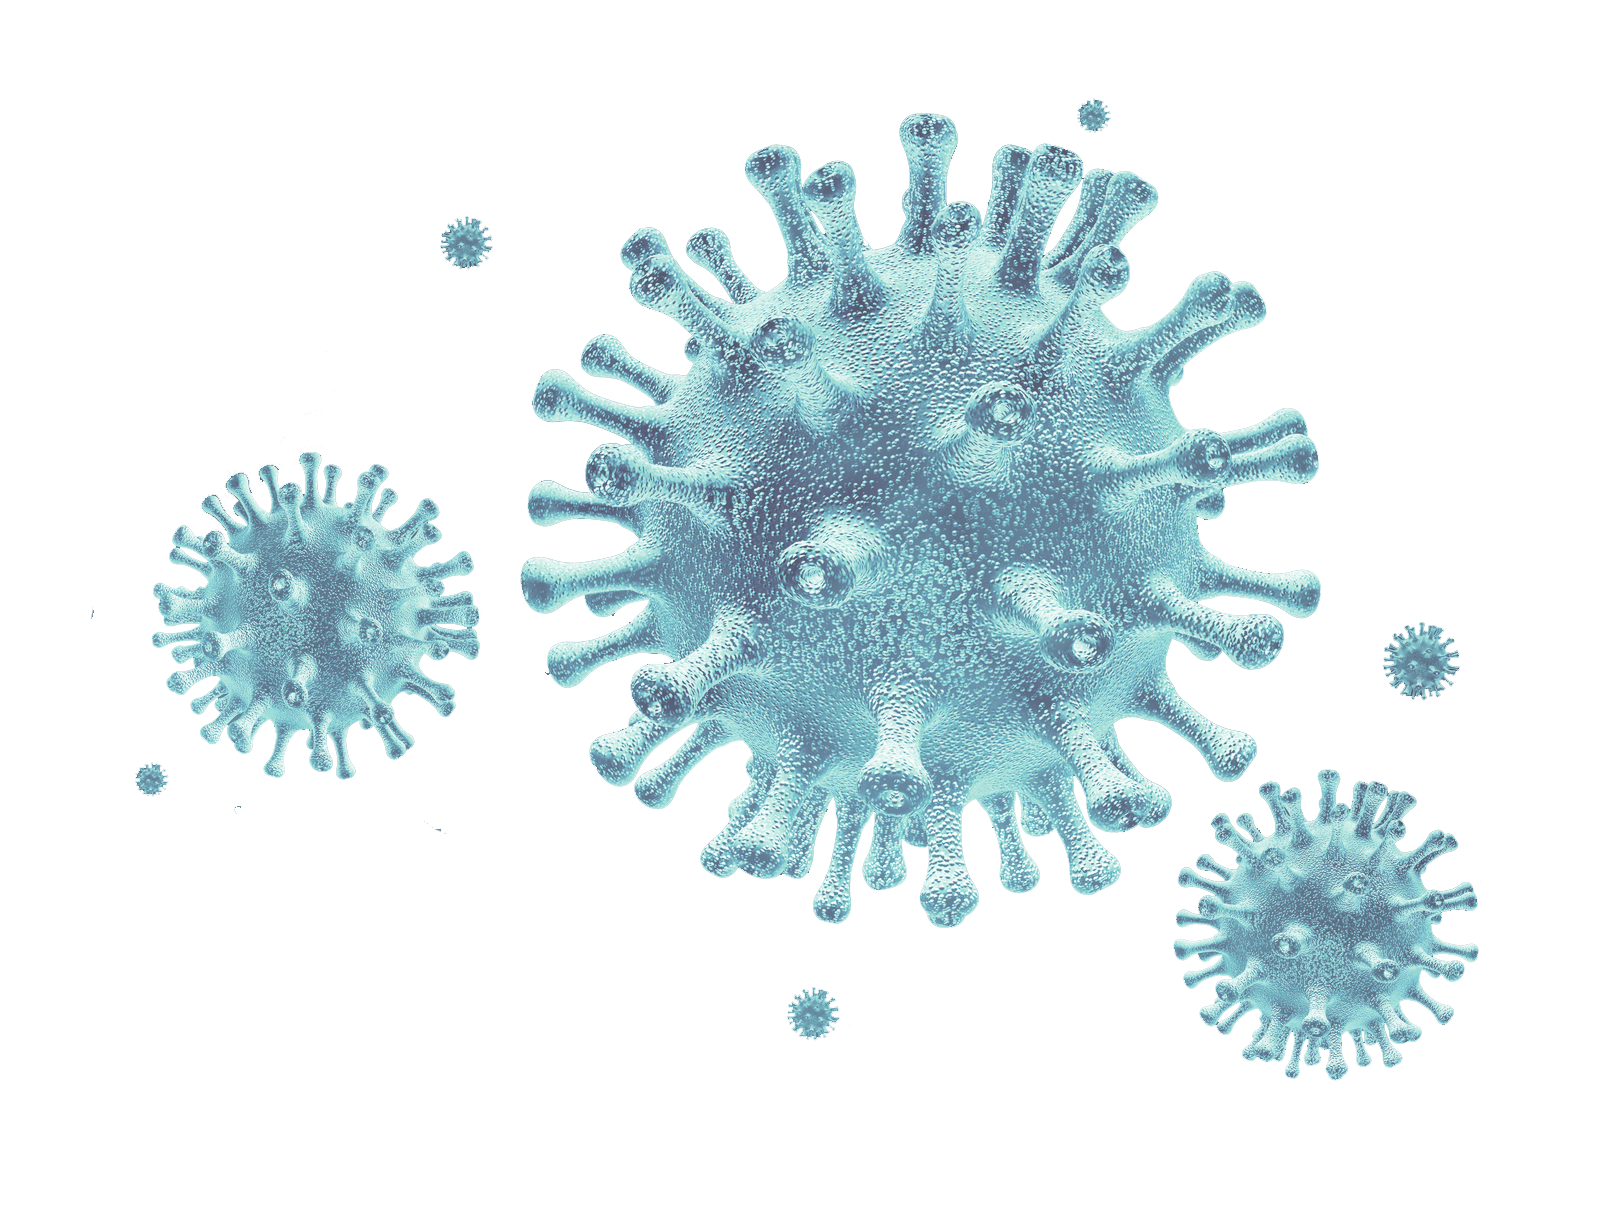 image of magnified corona virus. 